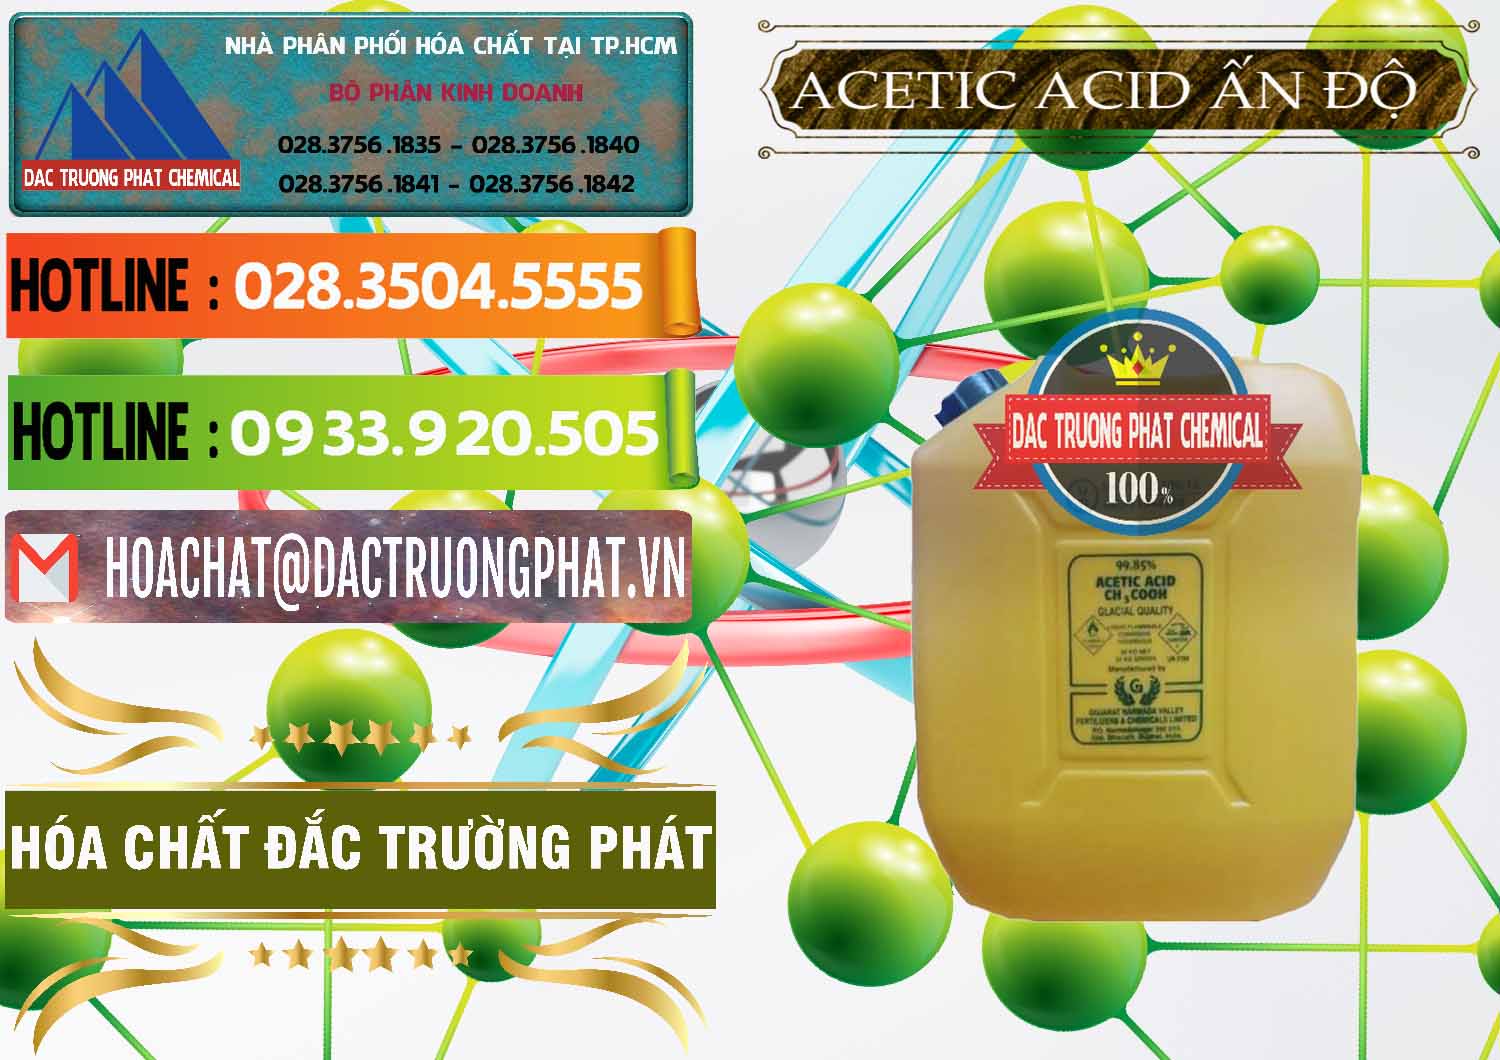 Đơn vị chuyên cung cấp _ bán Acetic Acid – Axit Acetic Ấn Độ India - 0359 - Công ty cung cấp & kinh doanh hóa chất tại TP.HCM - cungcaphoachat.com.vn